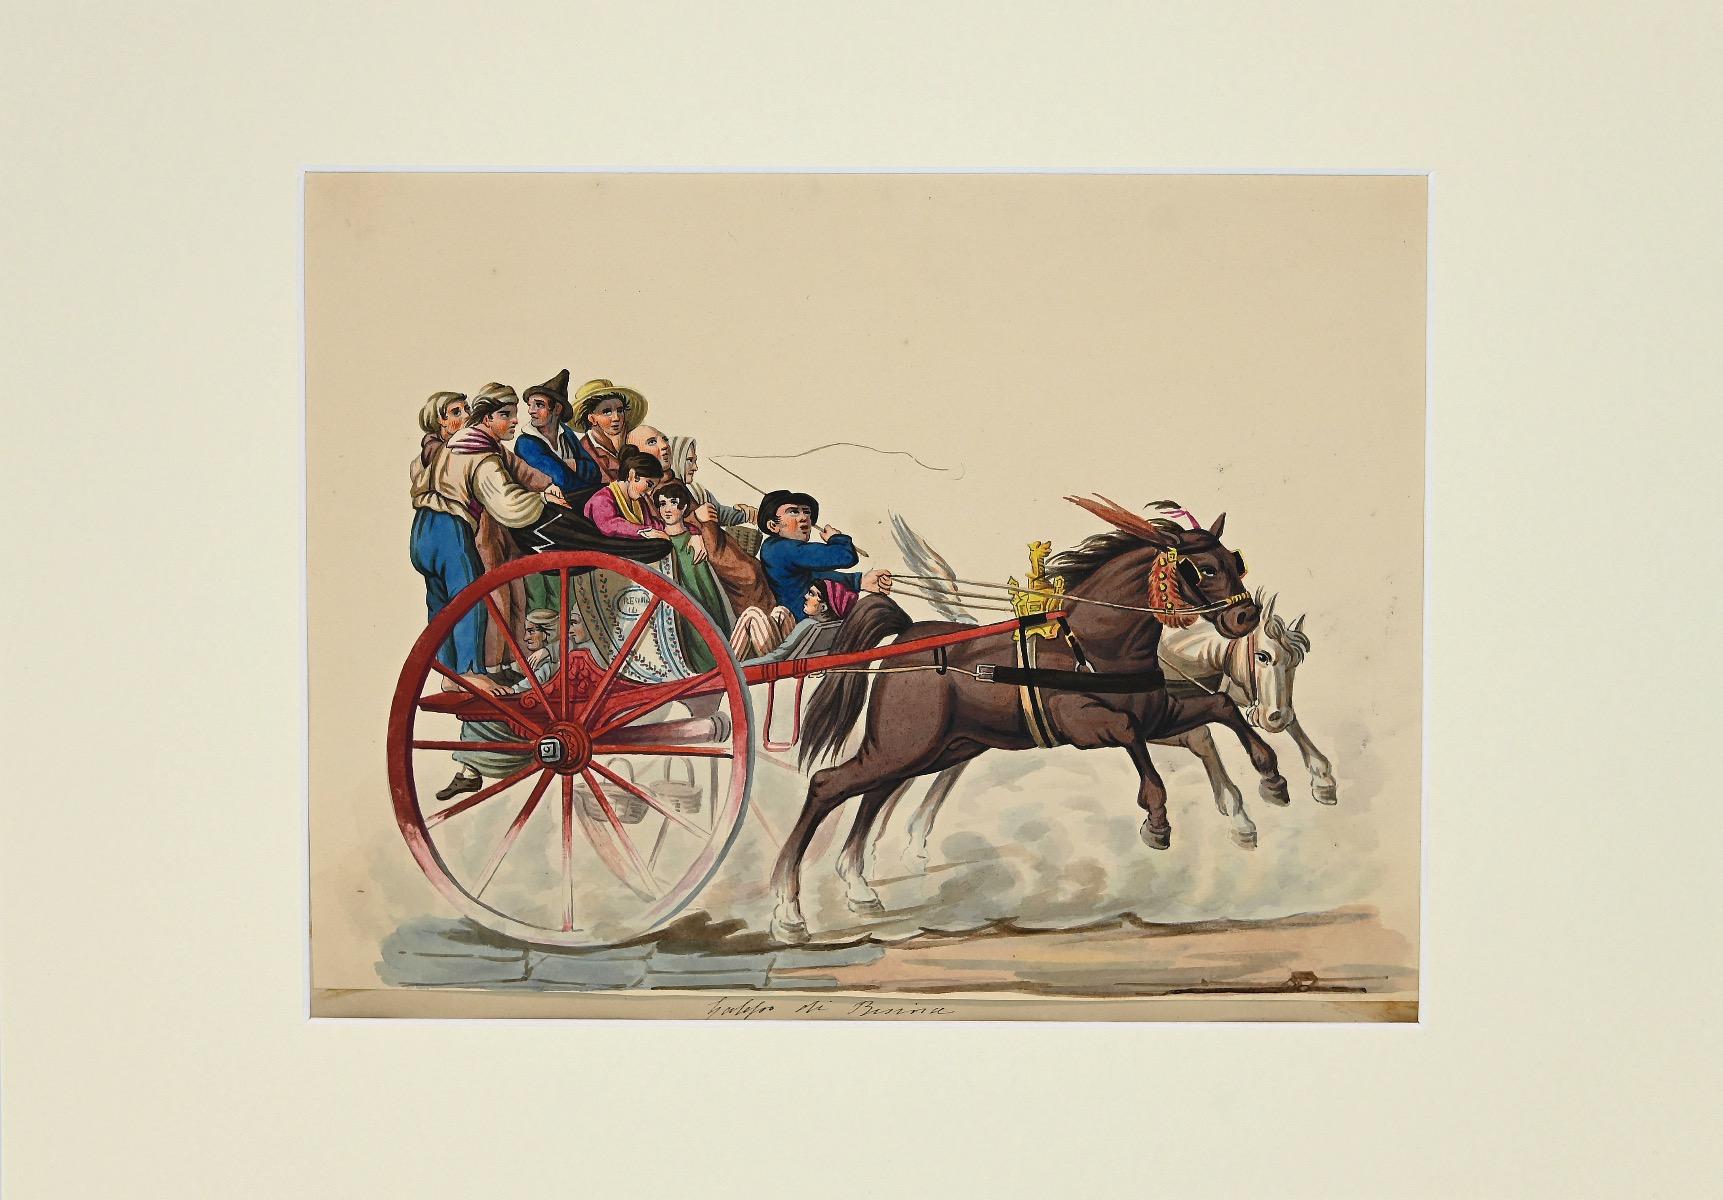 Figuren auf einem Wagen ist eine Original-Gouache auf elfenbeinfarbenem Papier, 1820 c.a., realisiert von Michela De Vito.

Sehr schönes Aquarell von guter Qualität, sowohl für die Zeichnung als auch für die Feinheit der Farben.

Michela De Vito